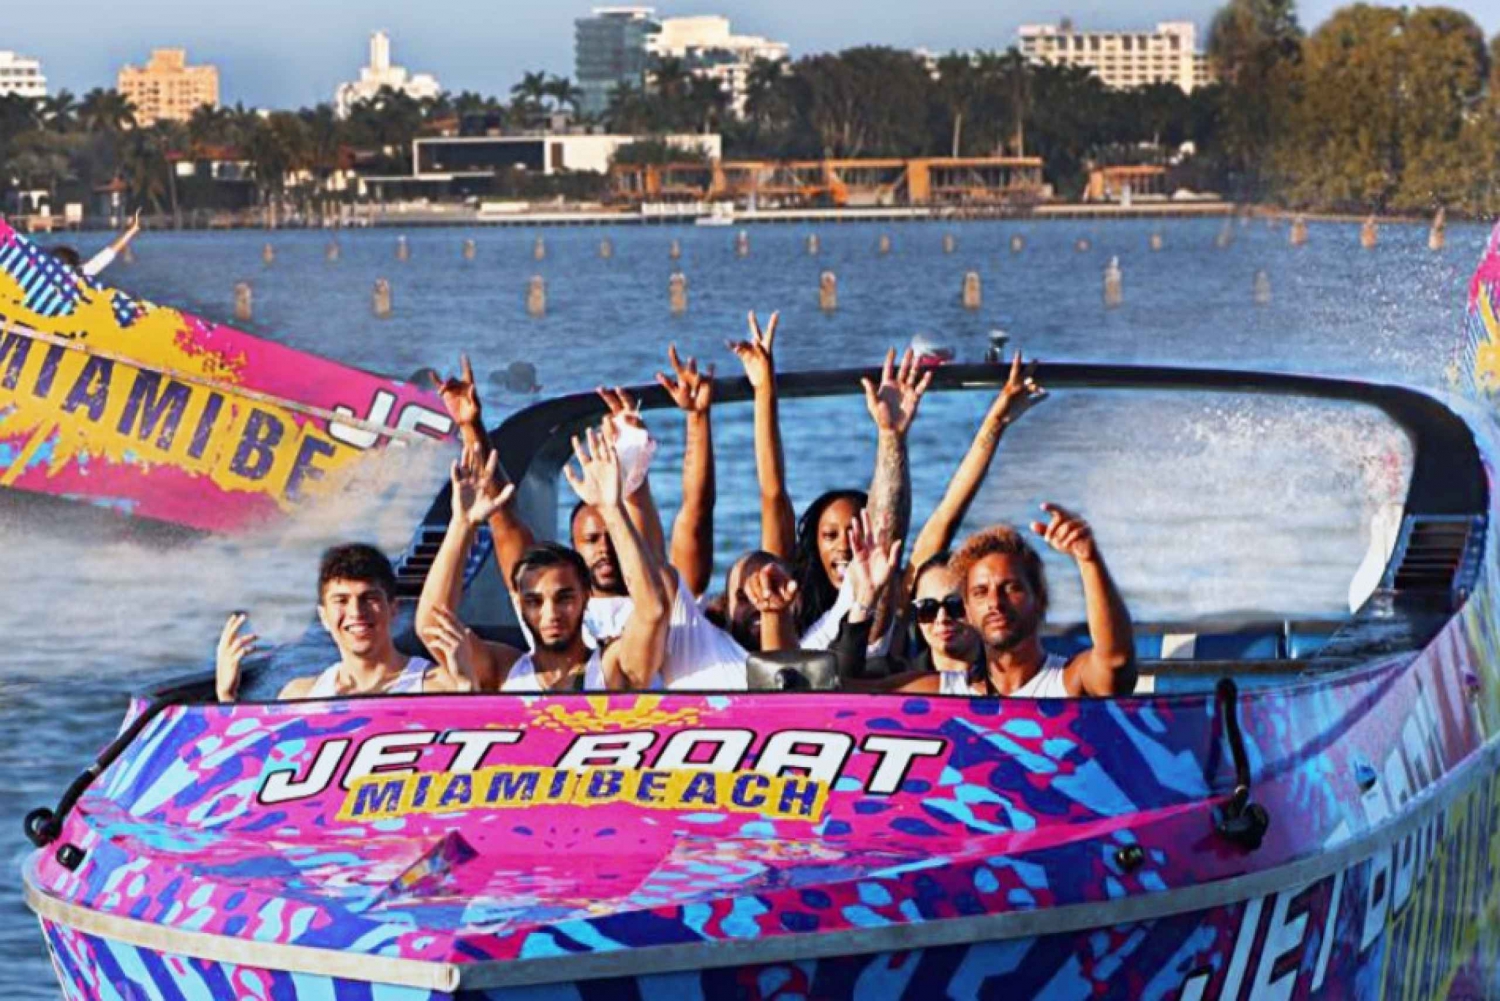 Speedboat-tur med jetbåt i 360 grader - en spennende opplevelse i Miami Beach